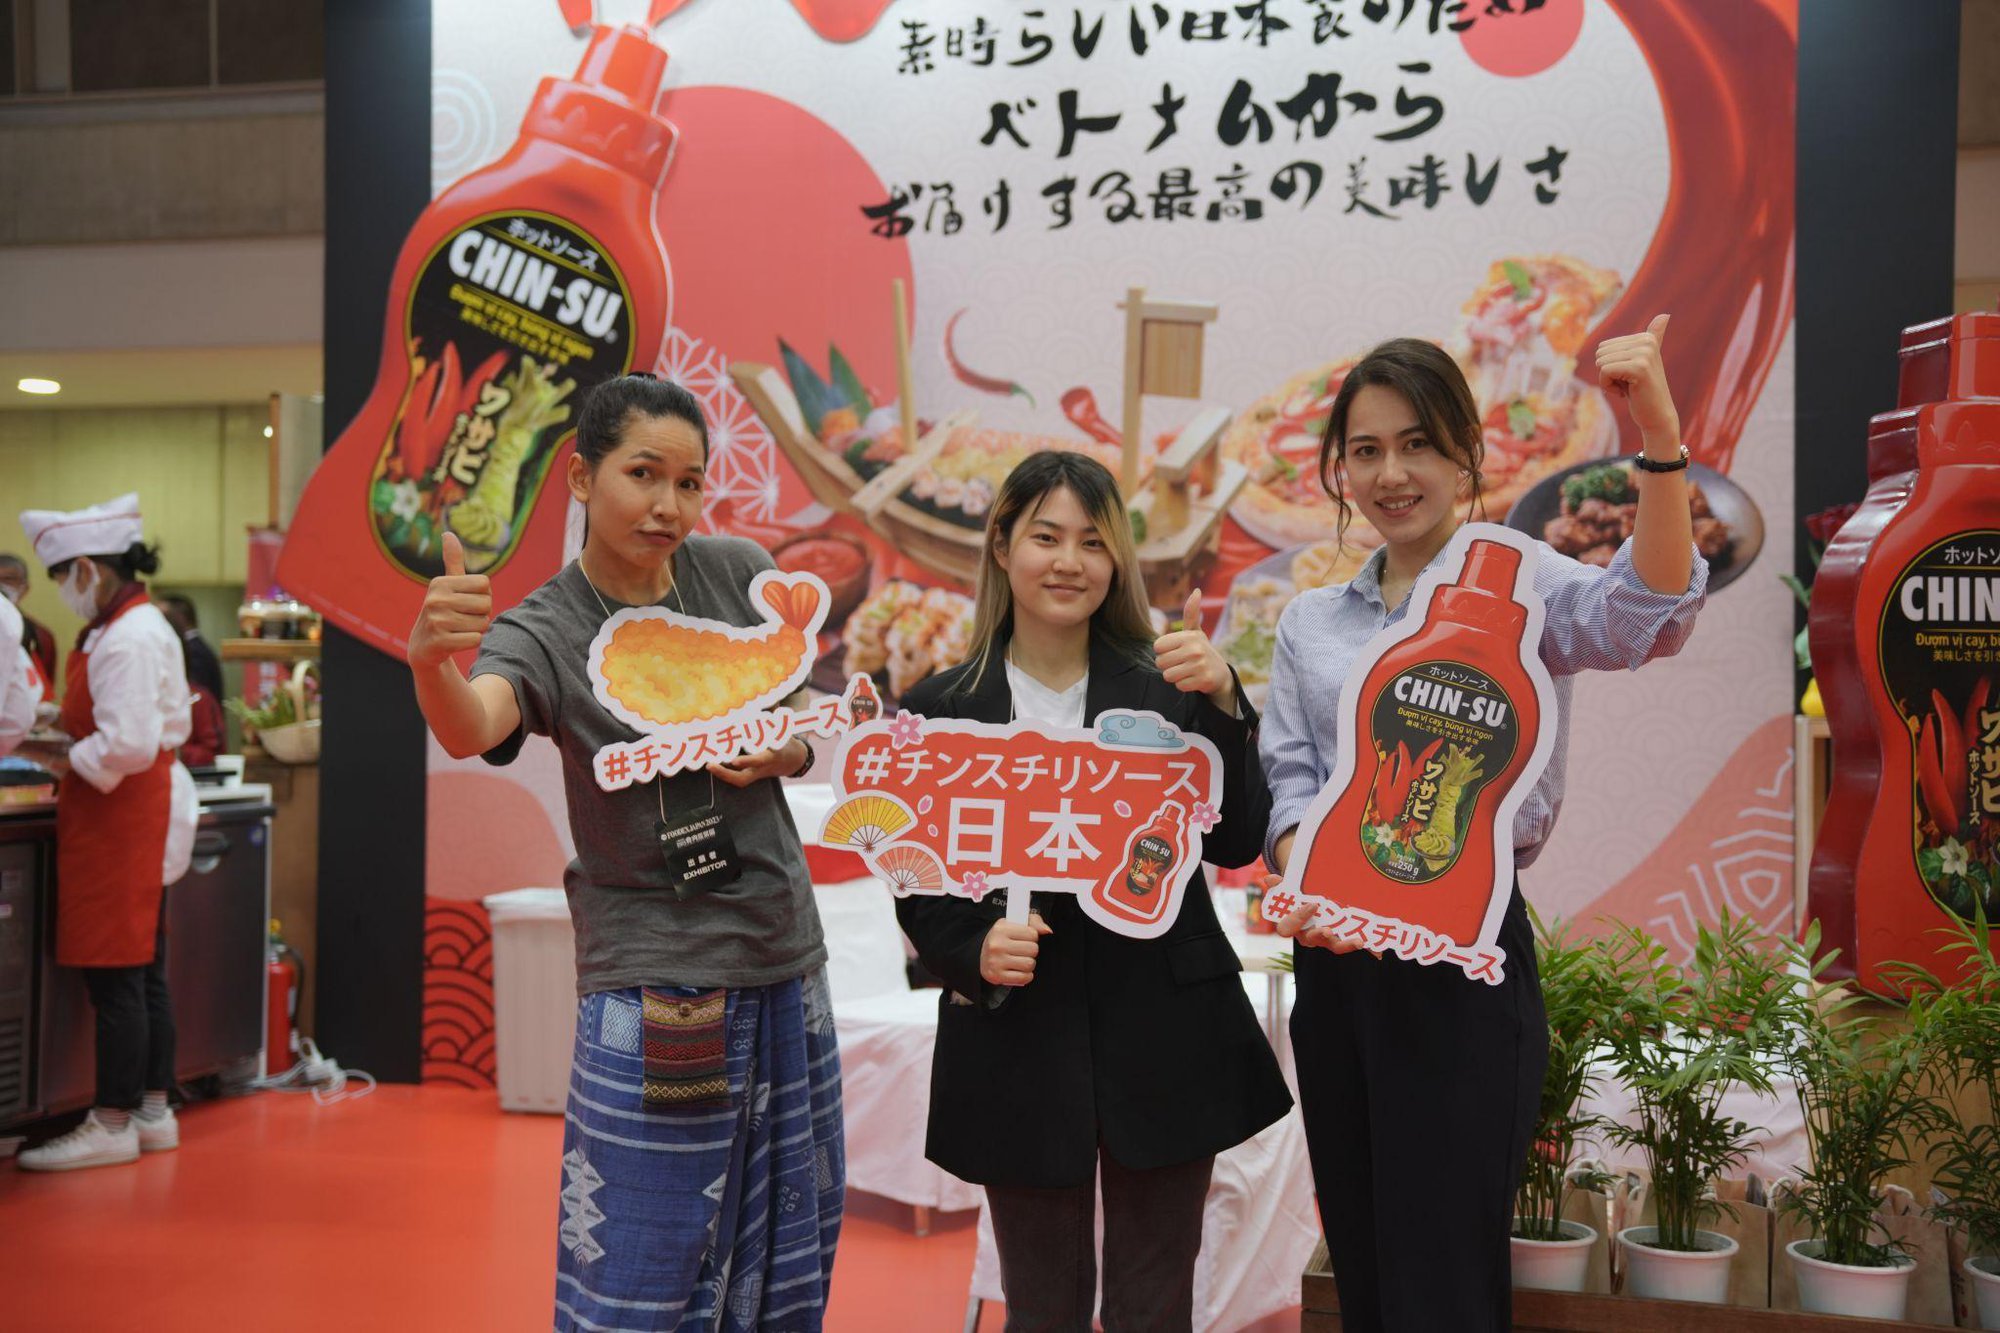 Tương ớt Chin-su Wasabi: Hương vị mới khiến tín đồ ẩm thực Nhật